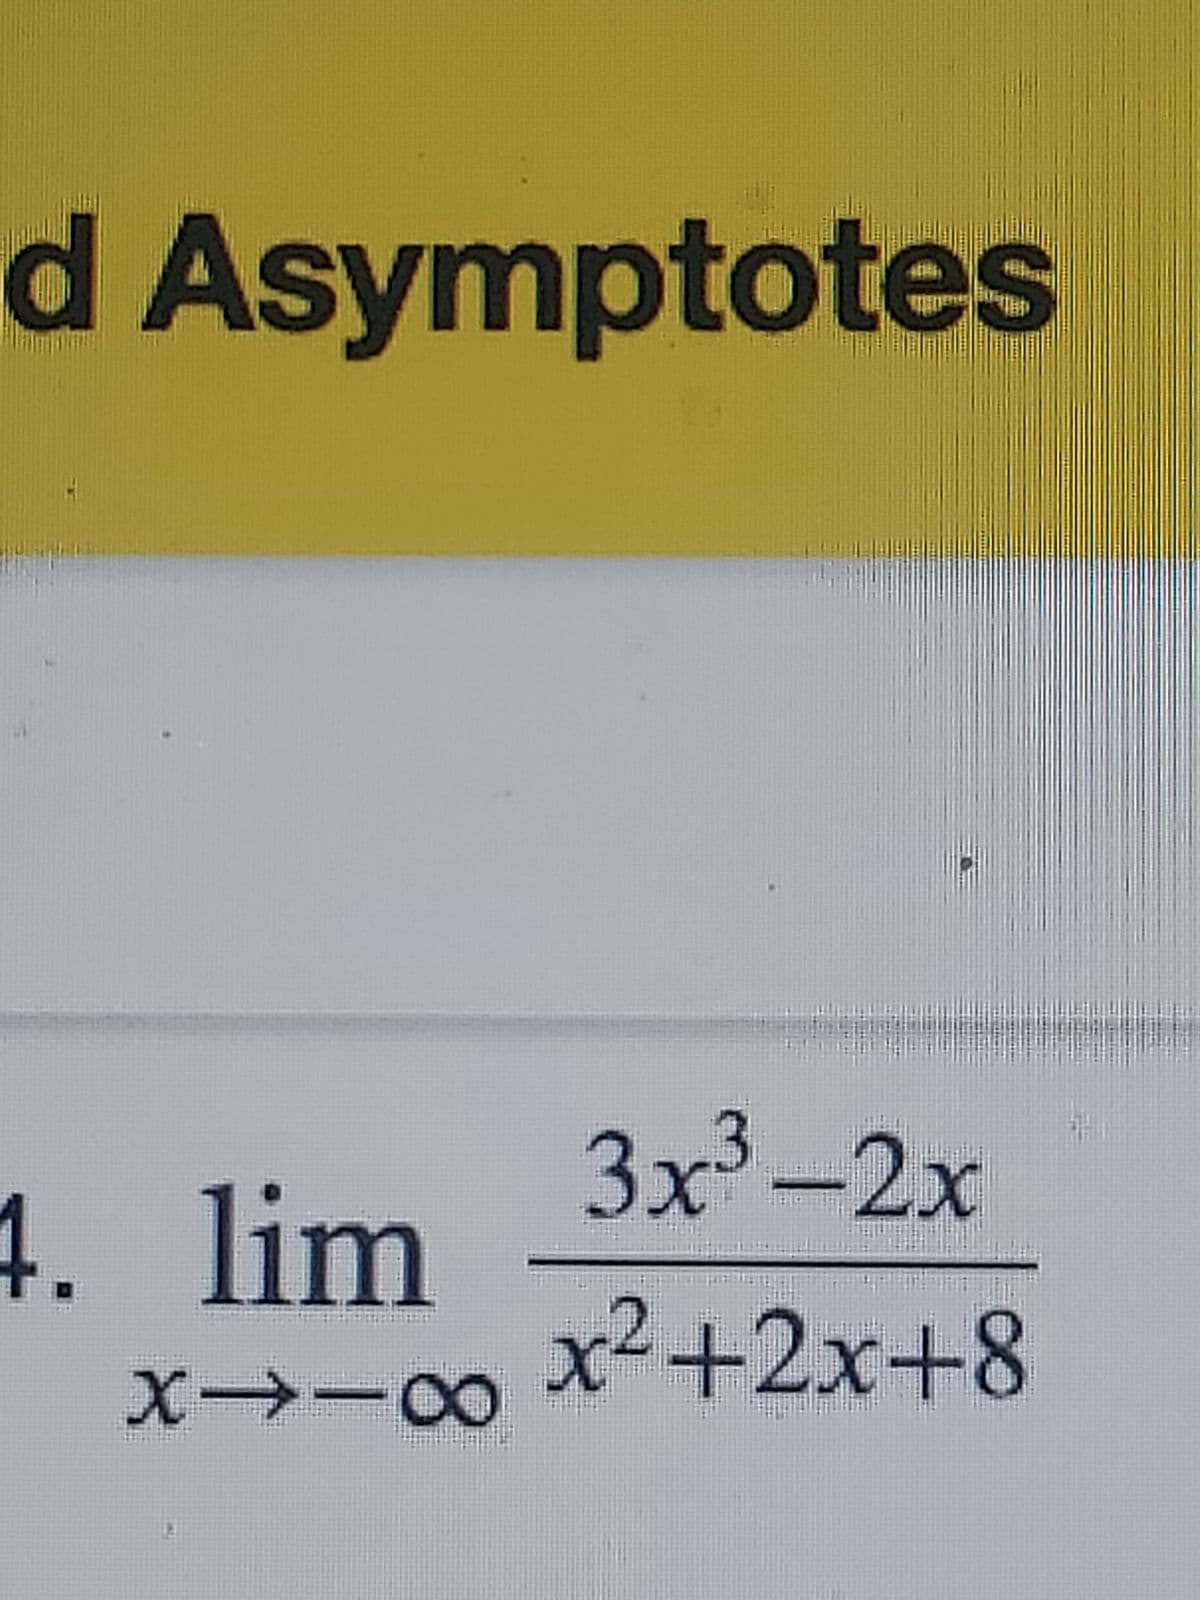 d Asymptotes
4. lim
X118
3x³-2x
x²+2x+8